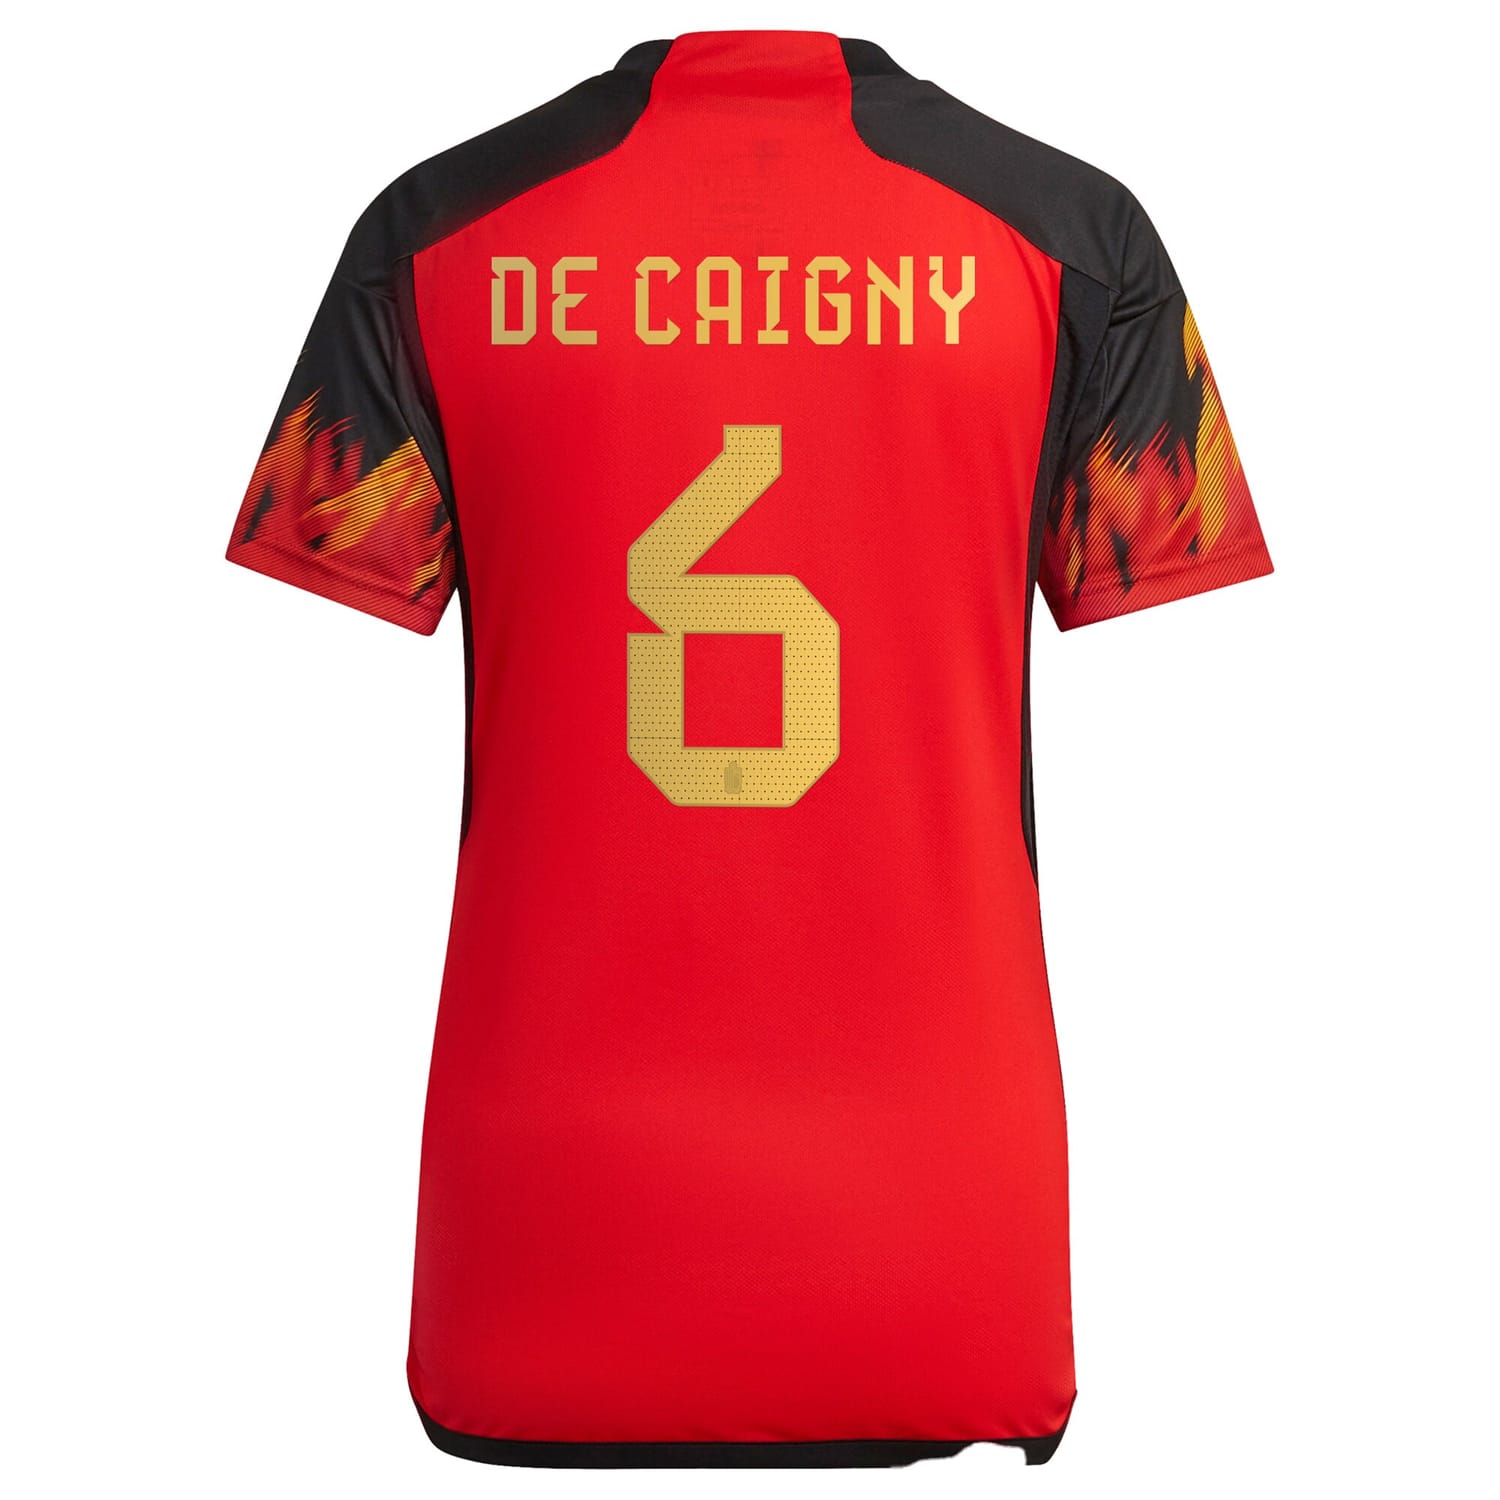 Belgium National Team Home Jersey Shirt 2022 player Tine De Caigny 6 printing for Women